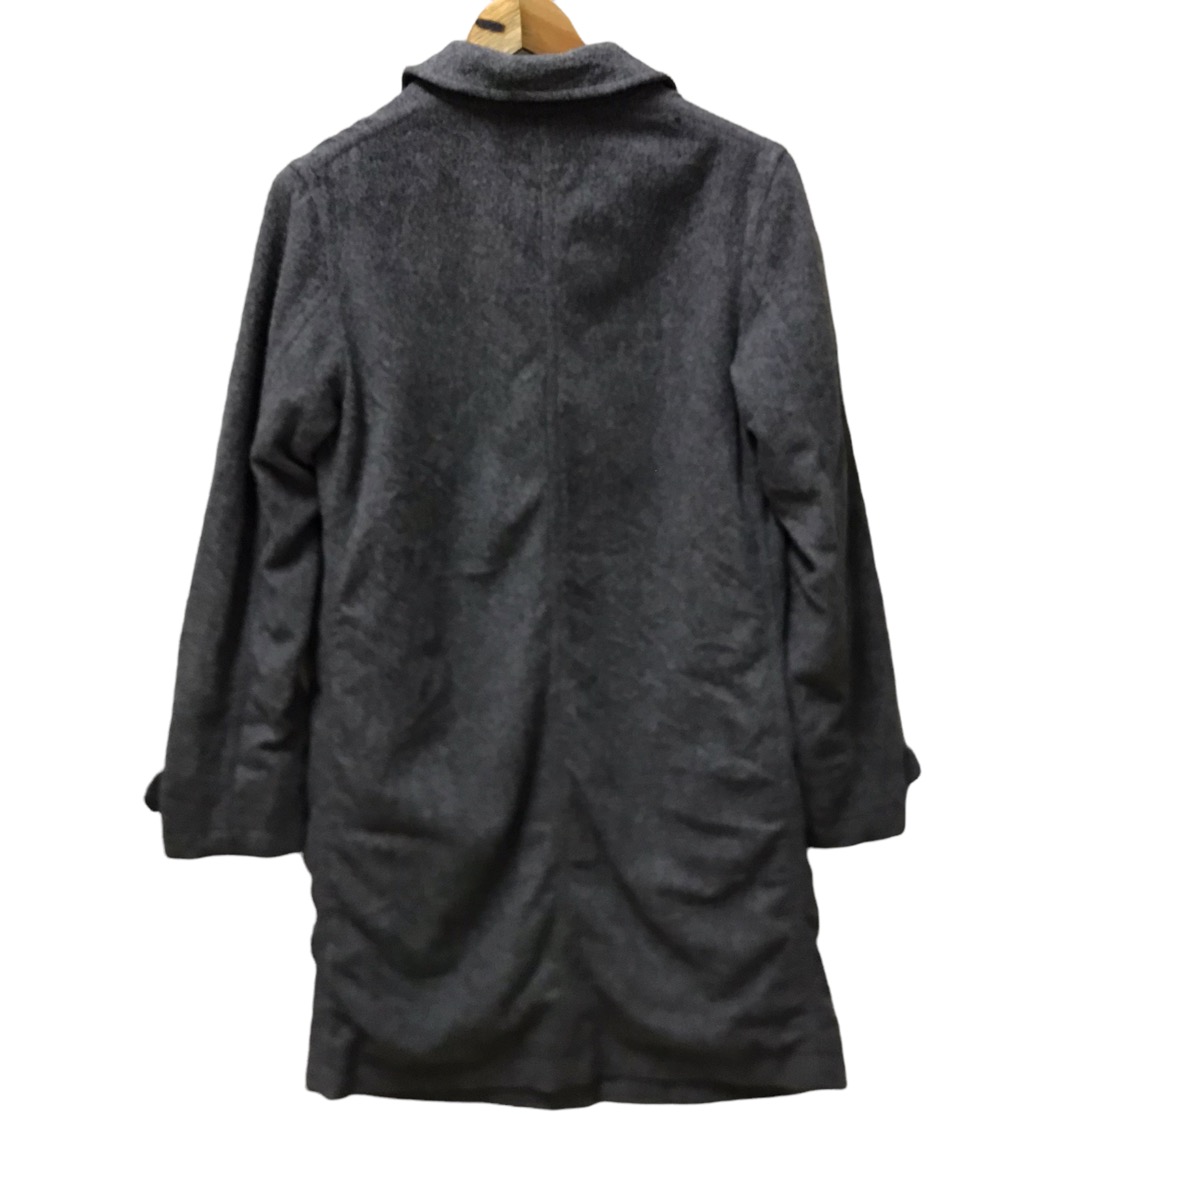 2003 Neighborhood grey wool coat - 3